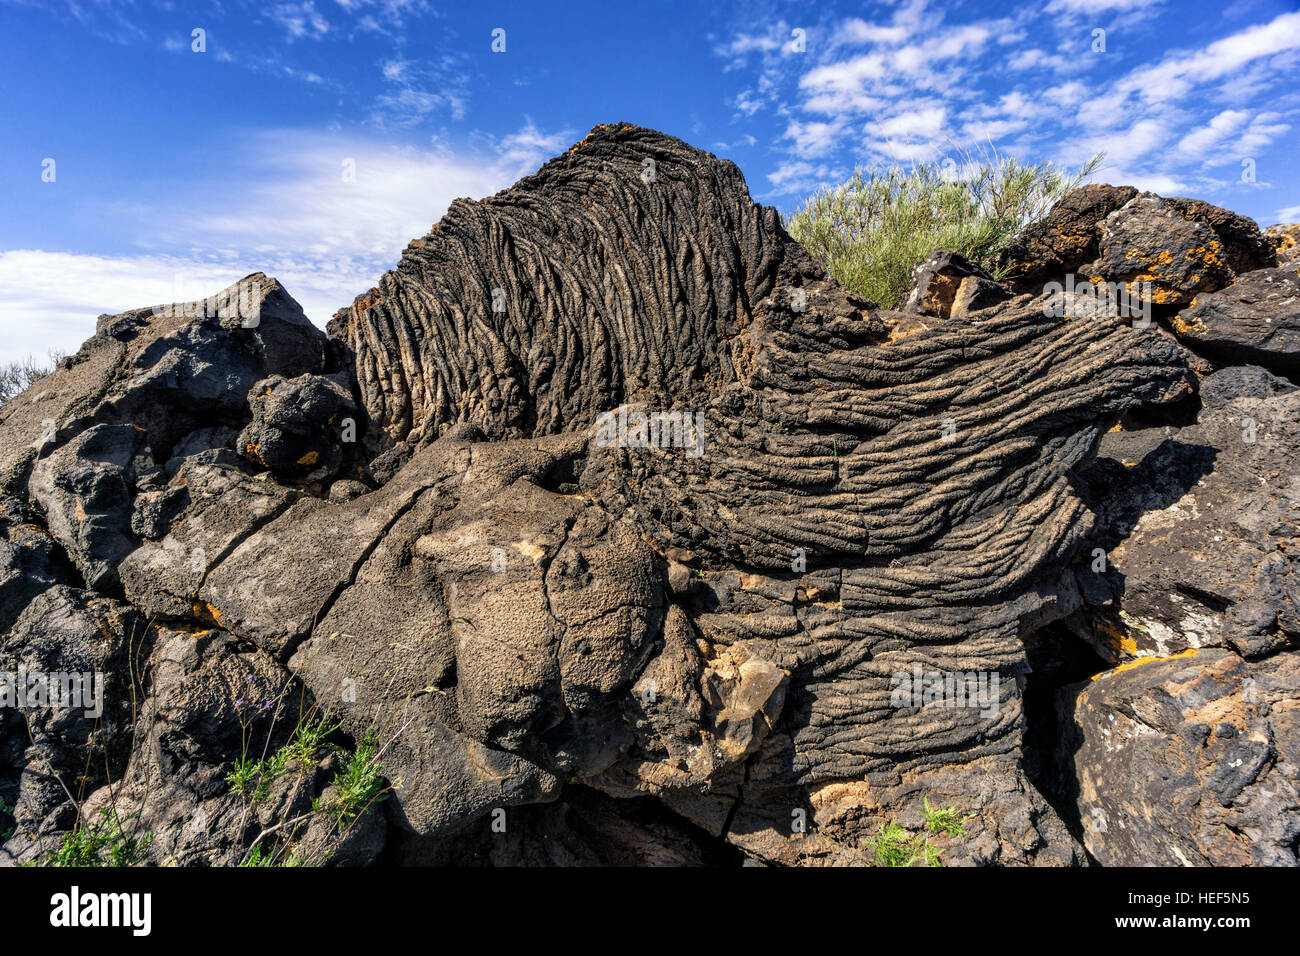 Mycelstränge Lava Bildung in das Naturdenkmal, Monumento natural del Tubo Volcanico de Todoque, Las Manchas, La Palma La Palma, Kanarische Inseln, Spanien Stockfoto